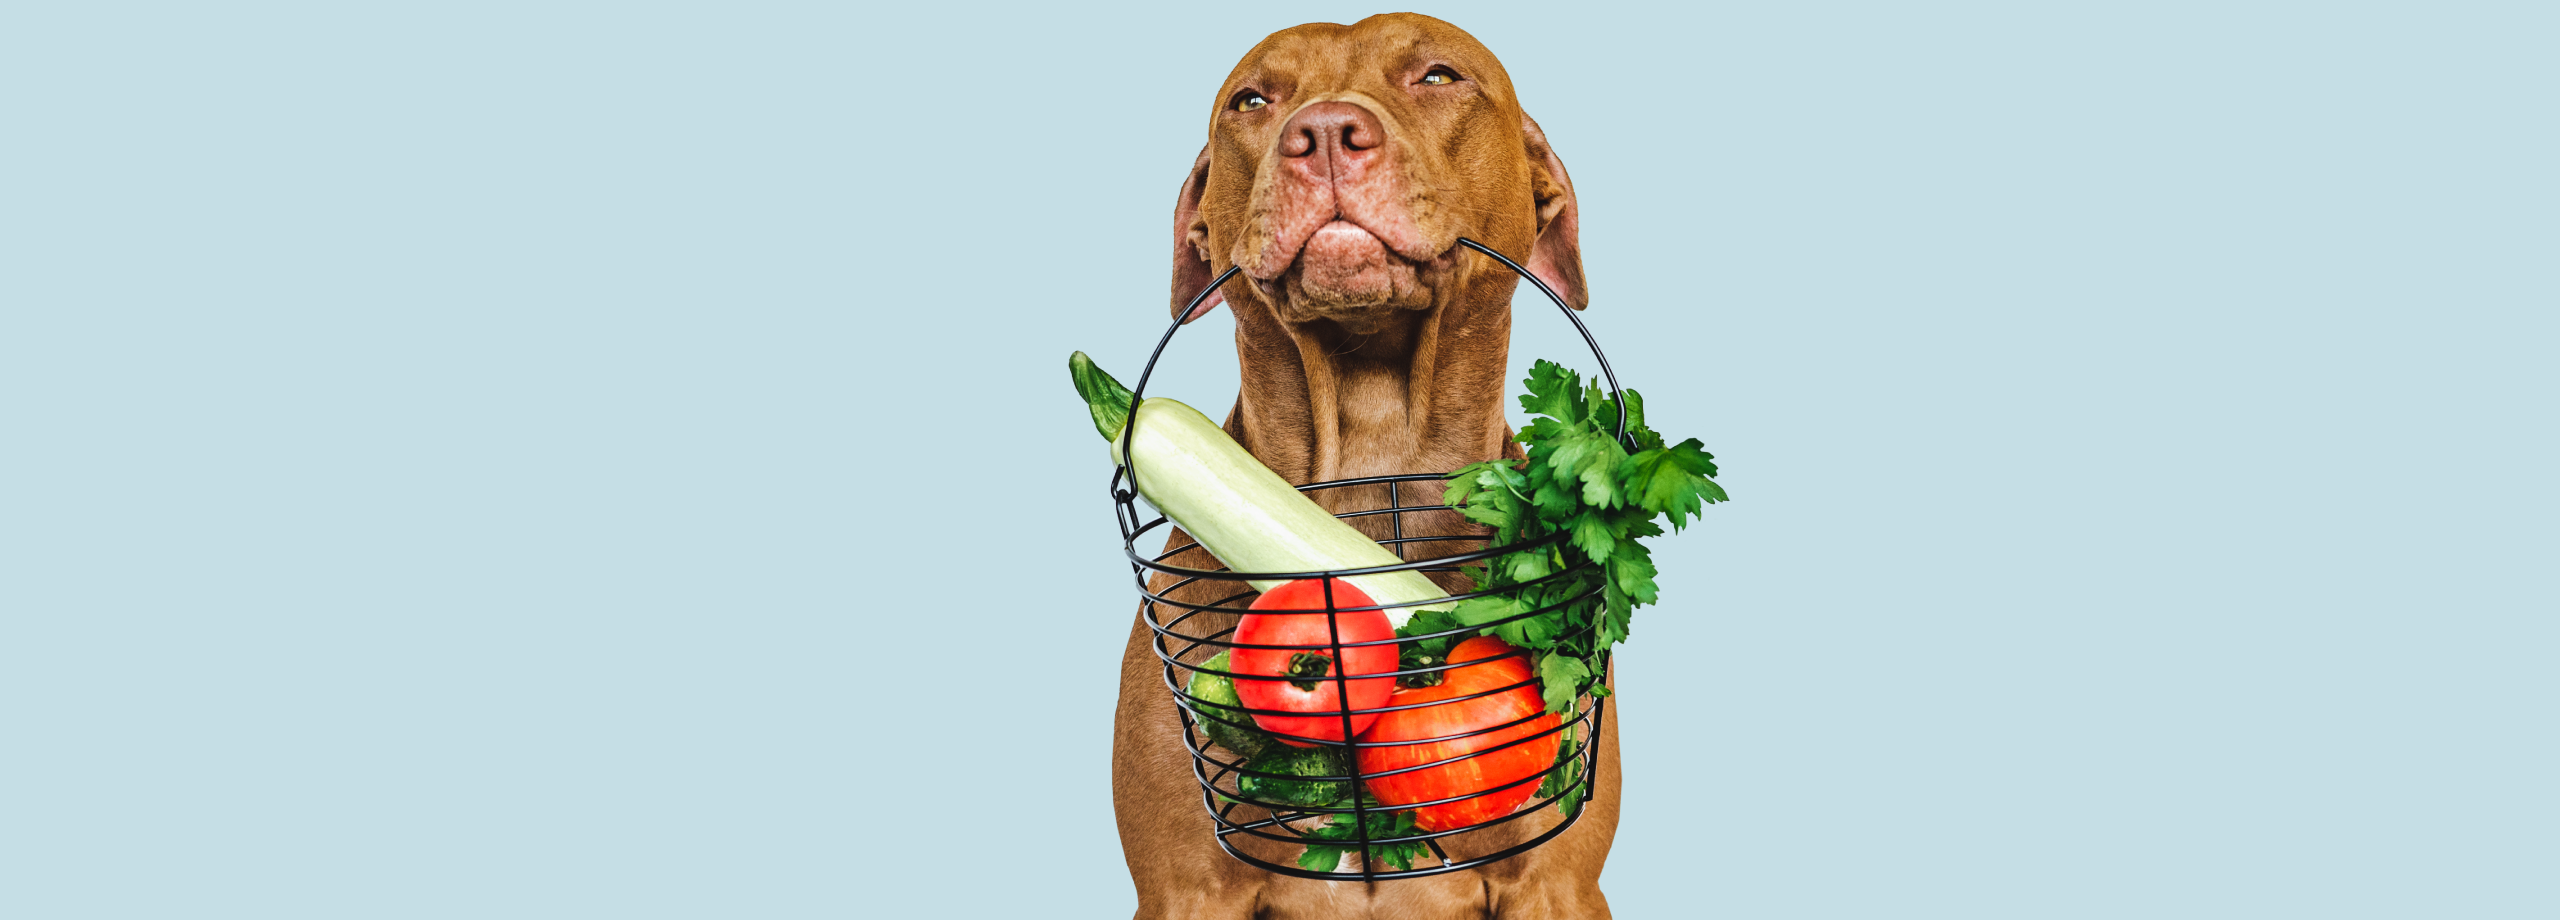 Obesidad en Perros: Riesgos, Síntomas y Soluciones - Supermascotas